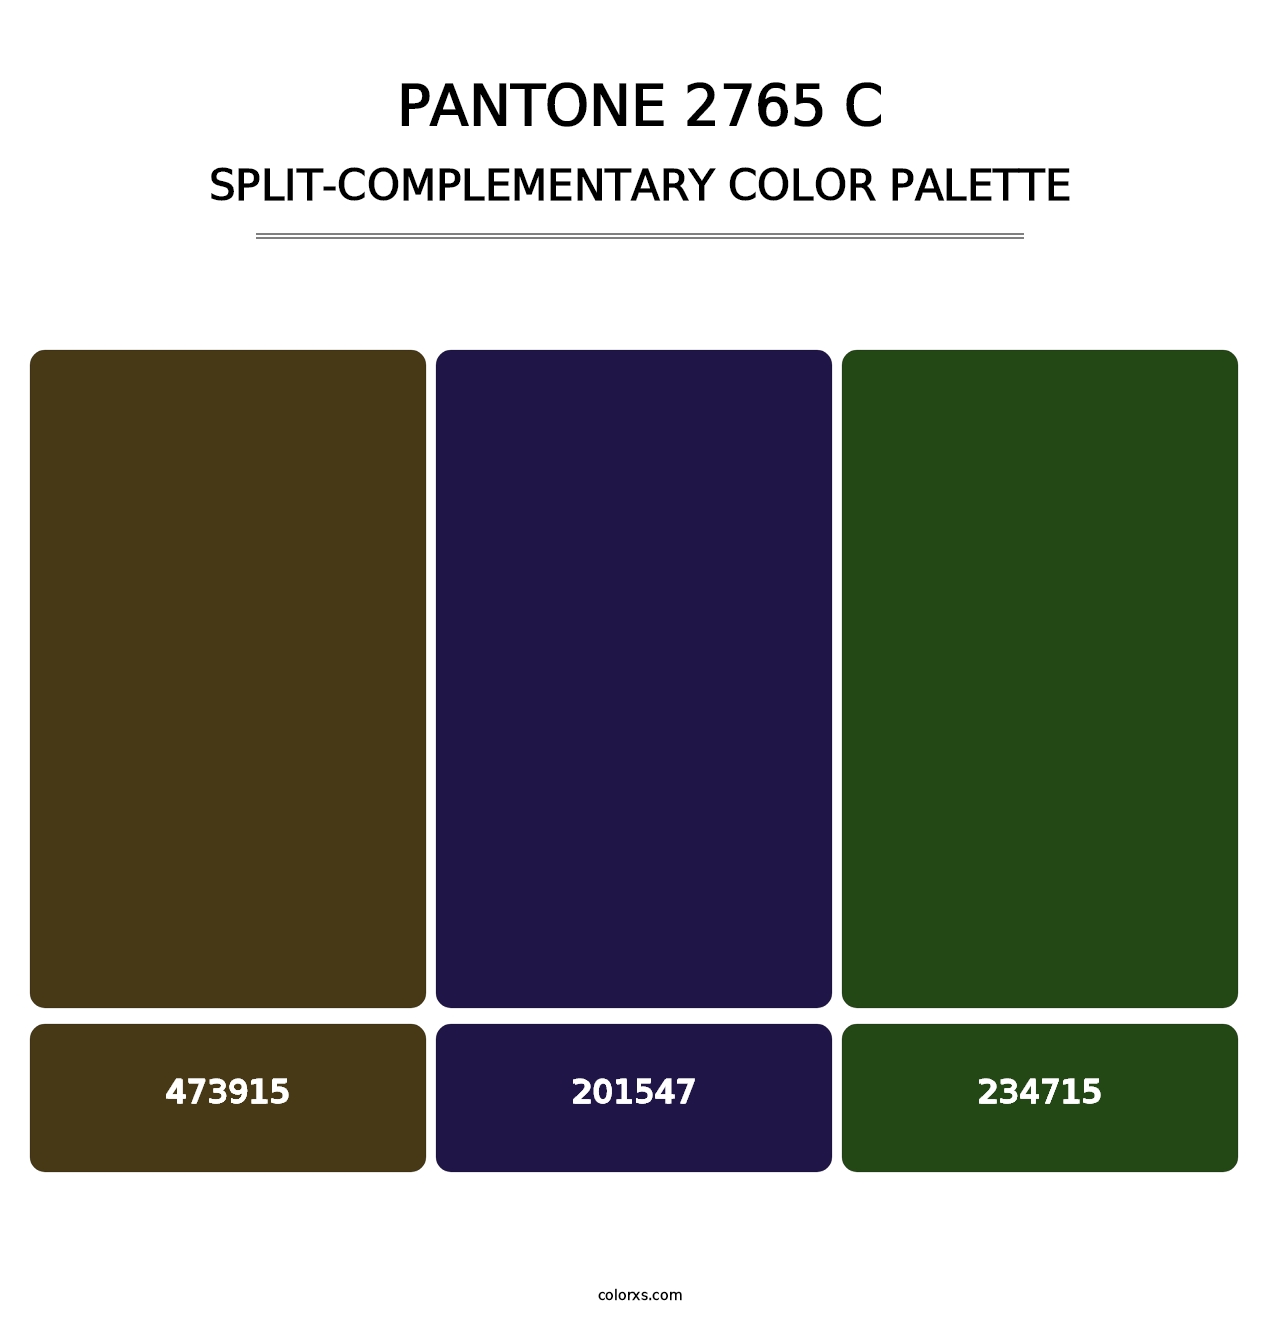 PANTONE 2765 C - Split-Complementary Color Palette